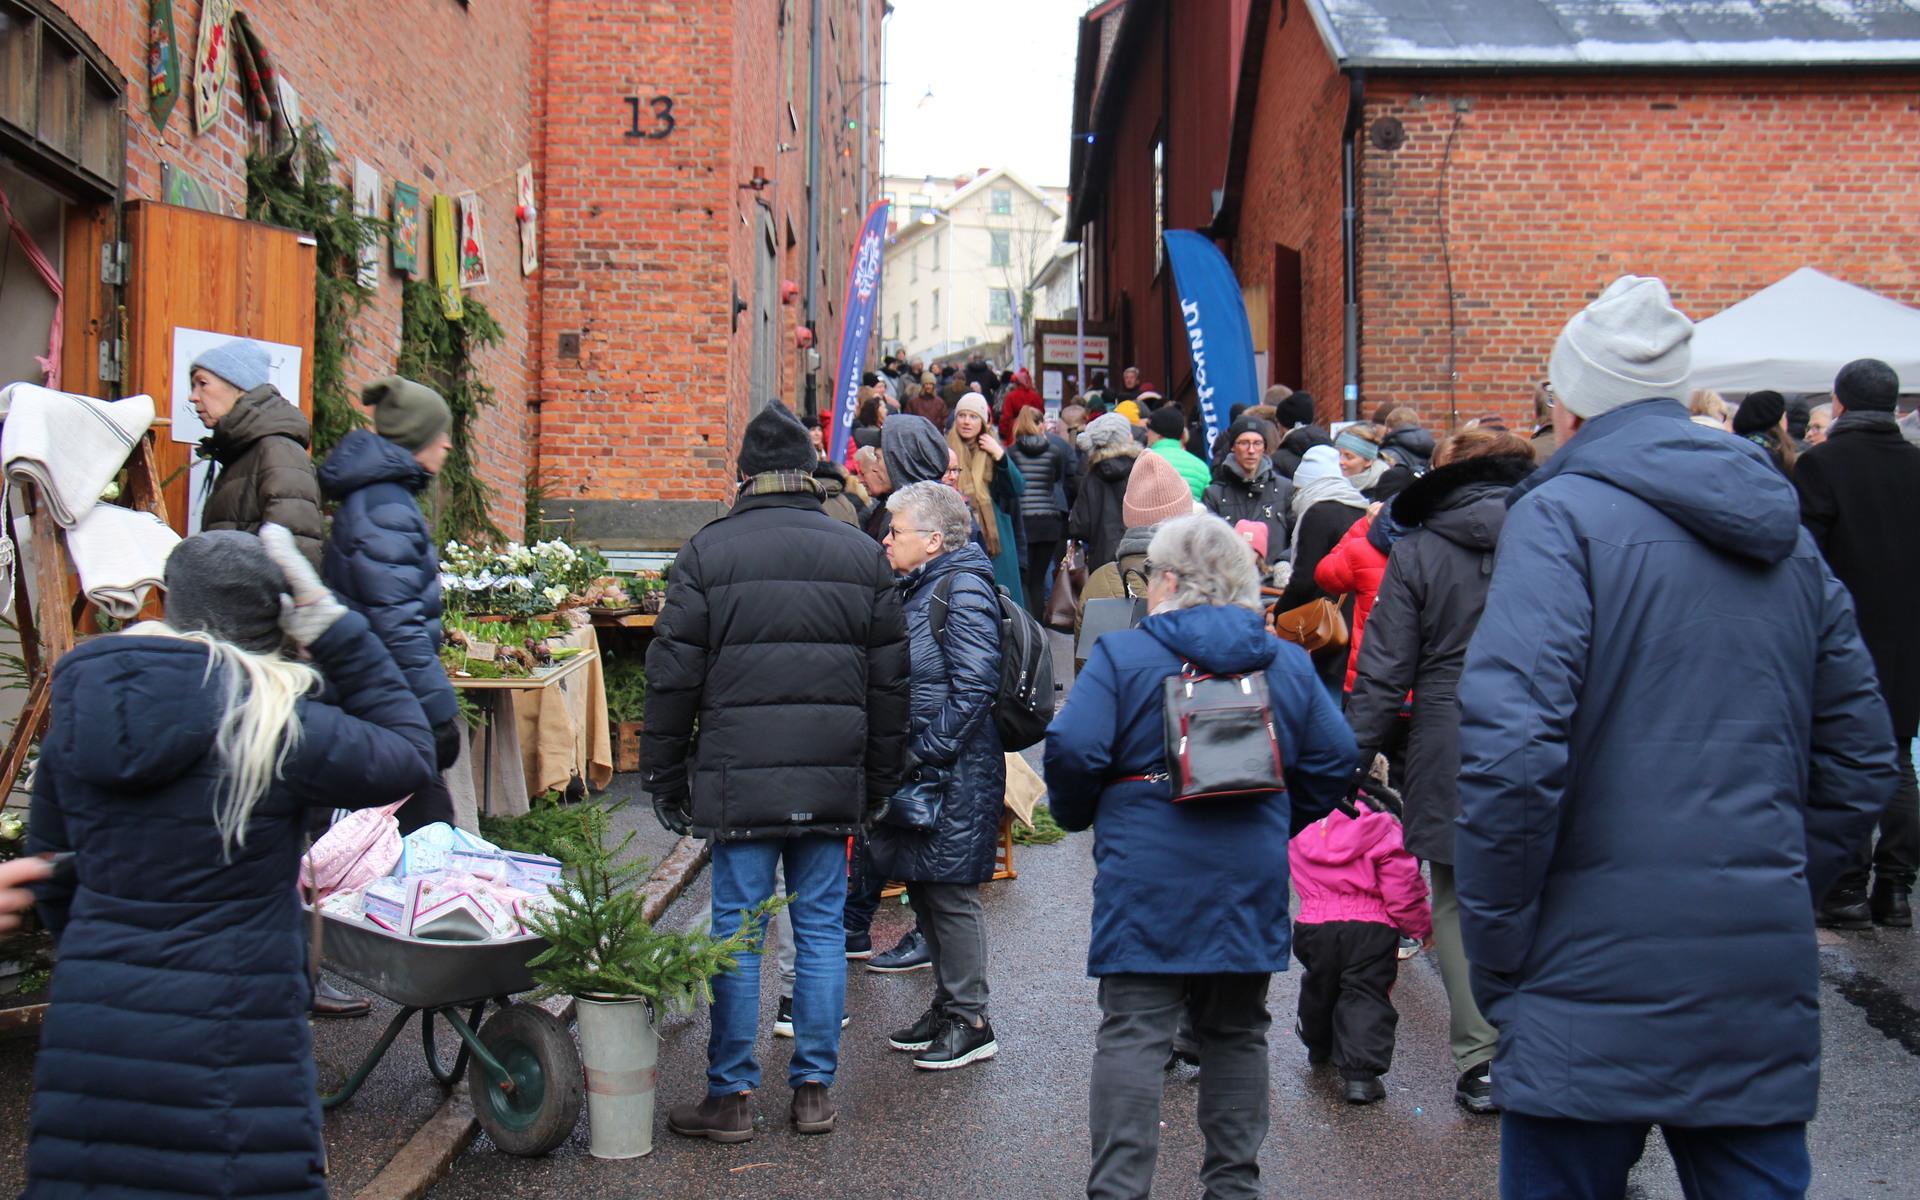 Det var gott om folk på liten yta när Jul i Kvarnbyn återuppstod efter ett års pandemifrånvaro.